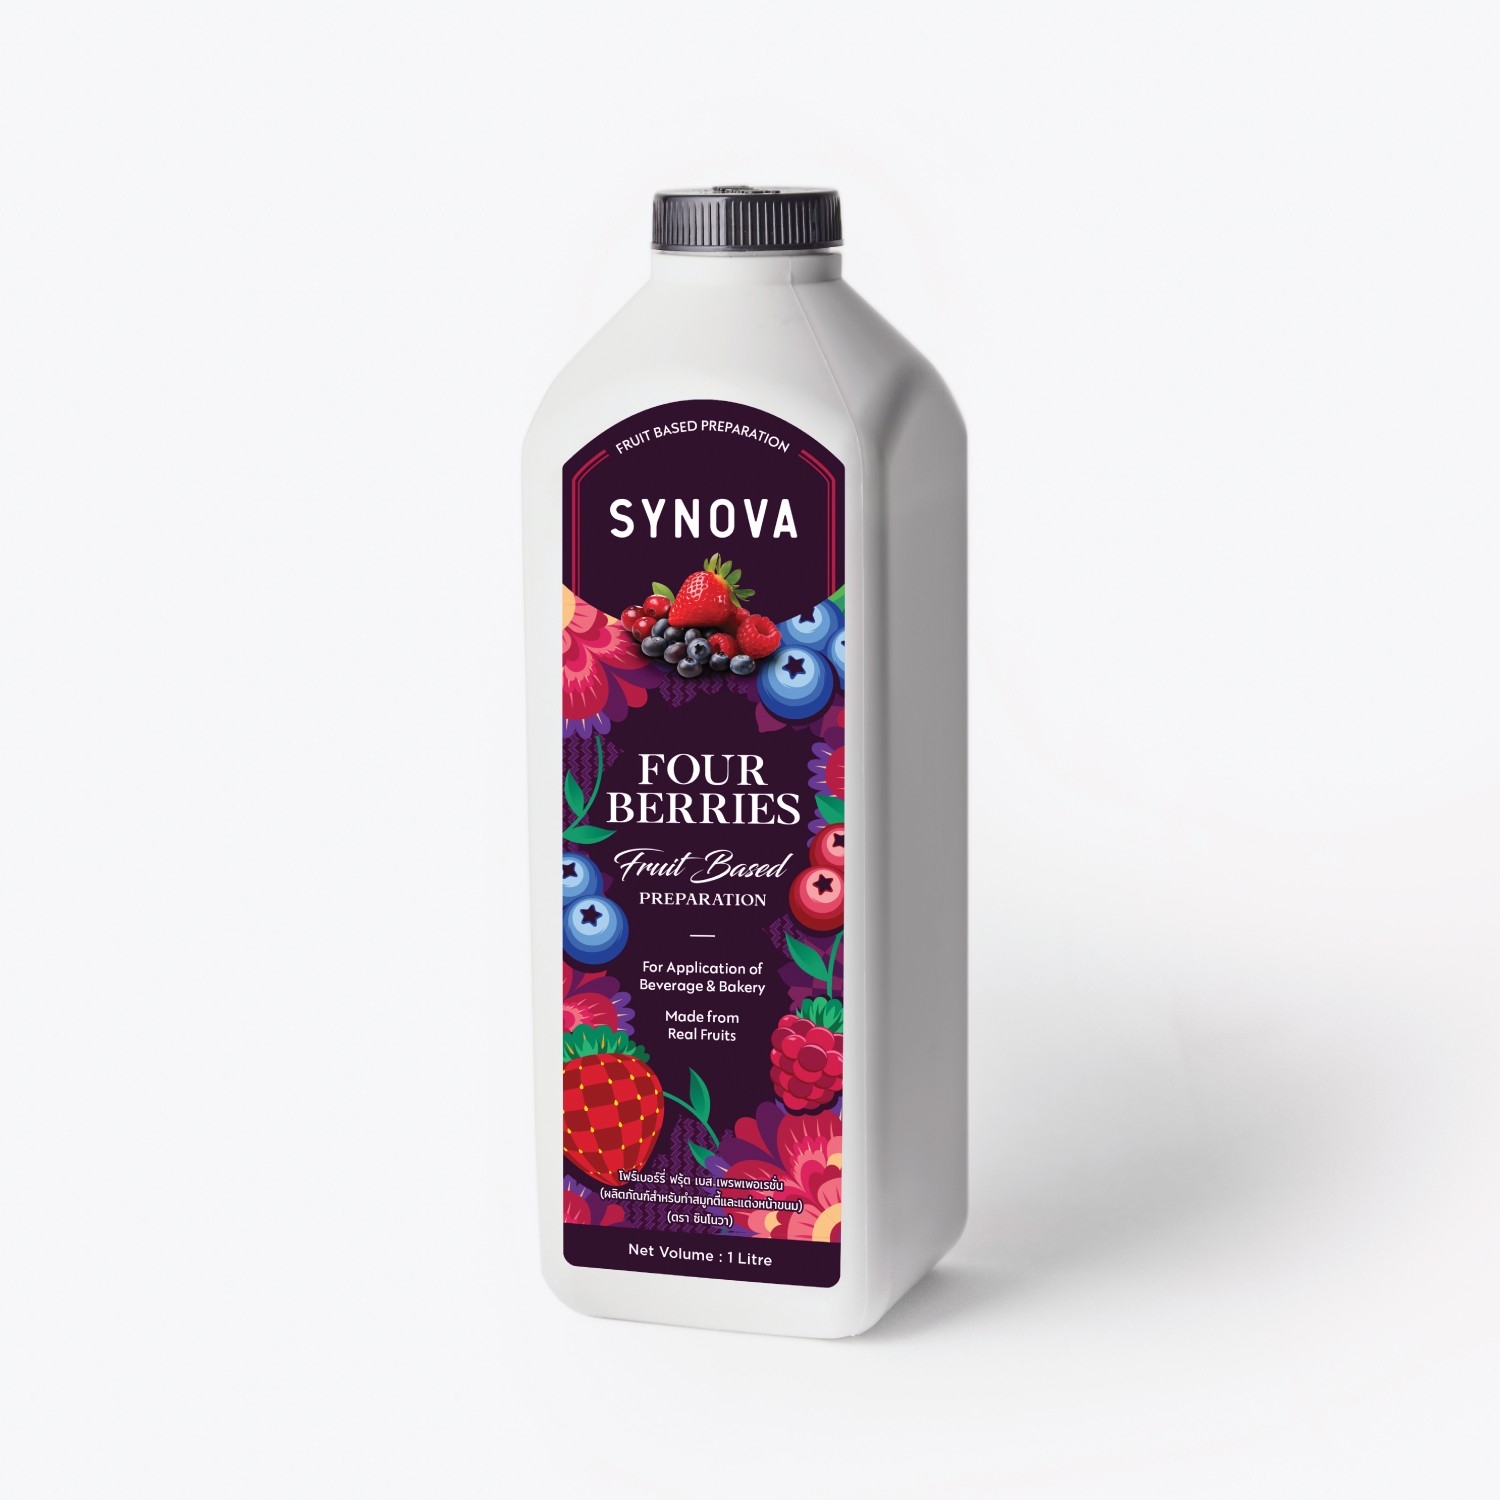 น้ำผลไม้เข้มข้น : SYNOVA ซอสโฟร์เบอร์รี่ เข้มข้น (ยกกล่อง)